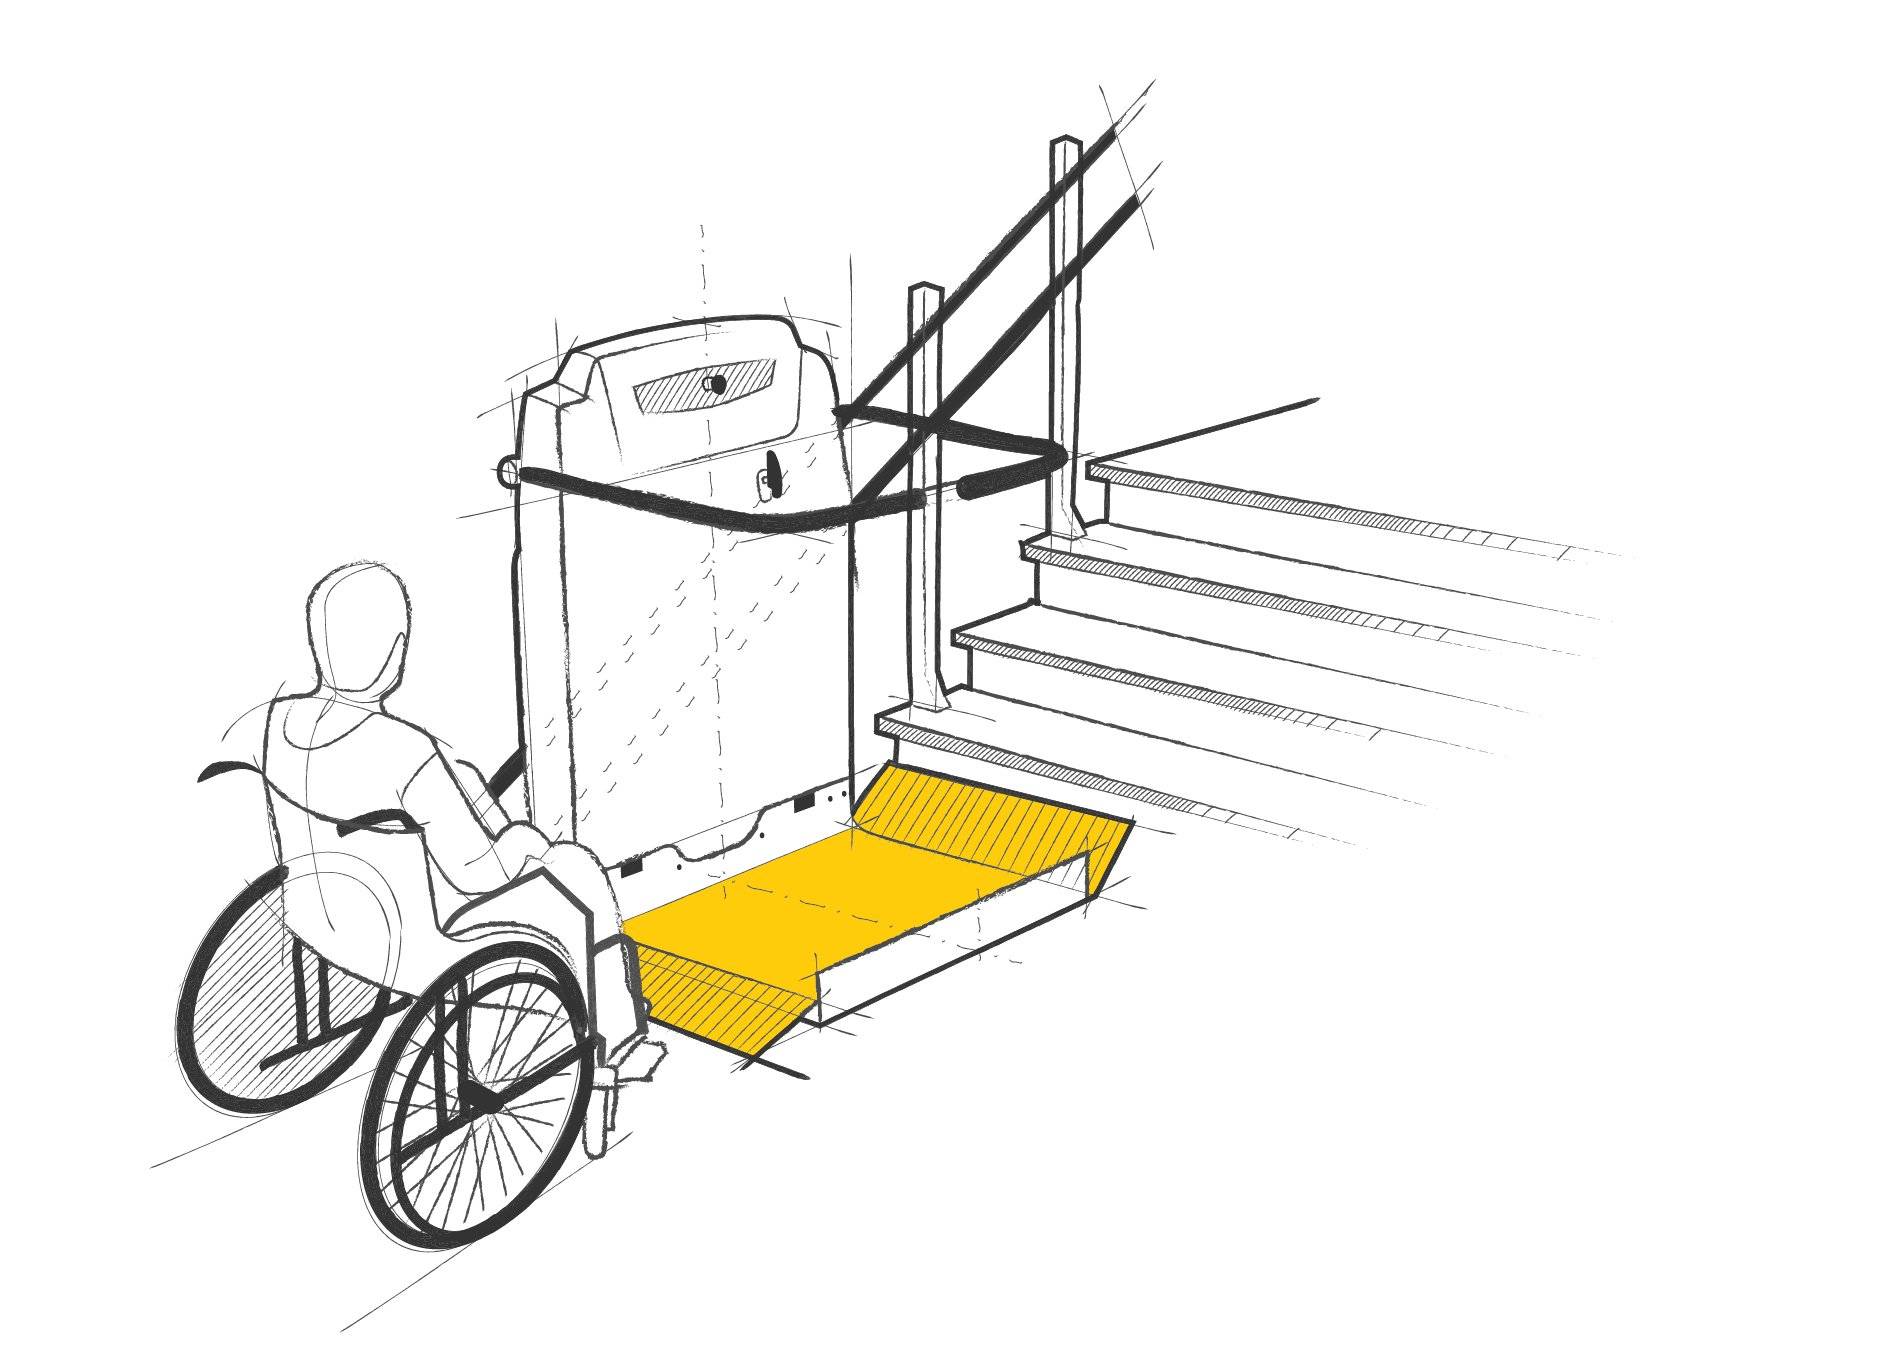 Accesibilidad con plataformas elevadoras y salvaescaleras para minusválidos  - FAIN